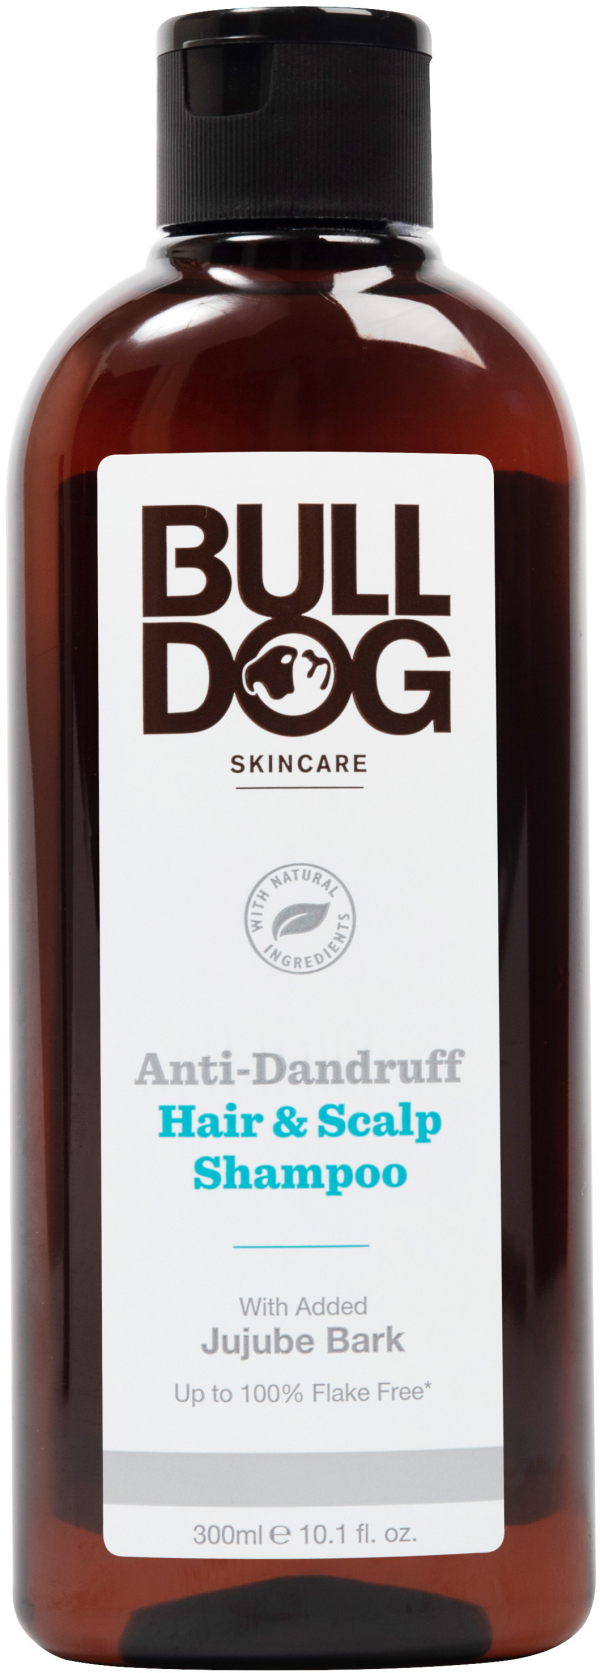 Bulldog Anti-Dandruff Shampoo 302 ml